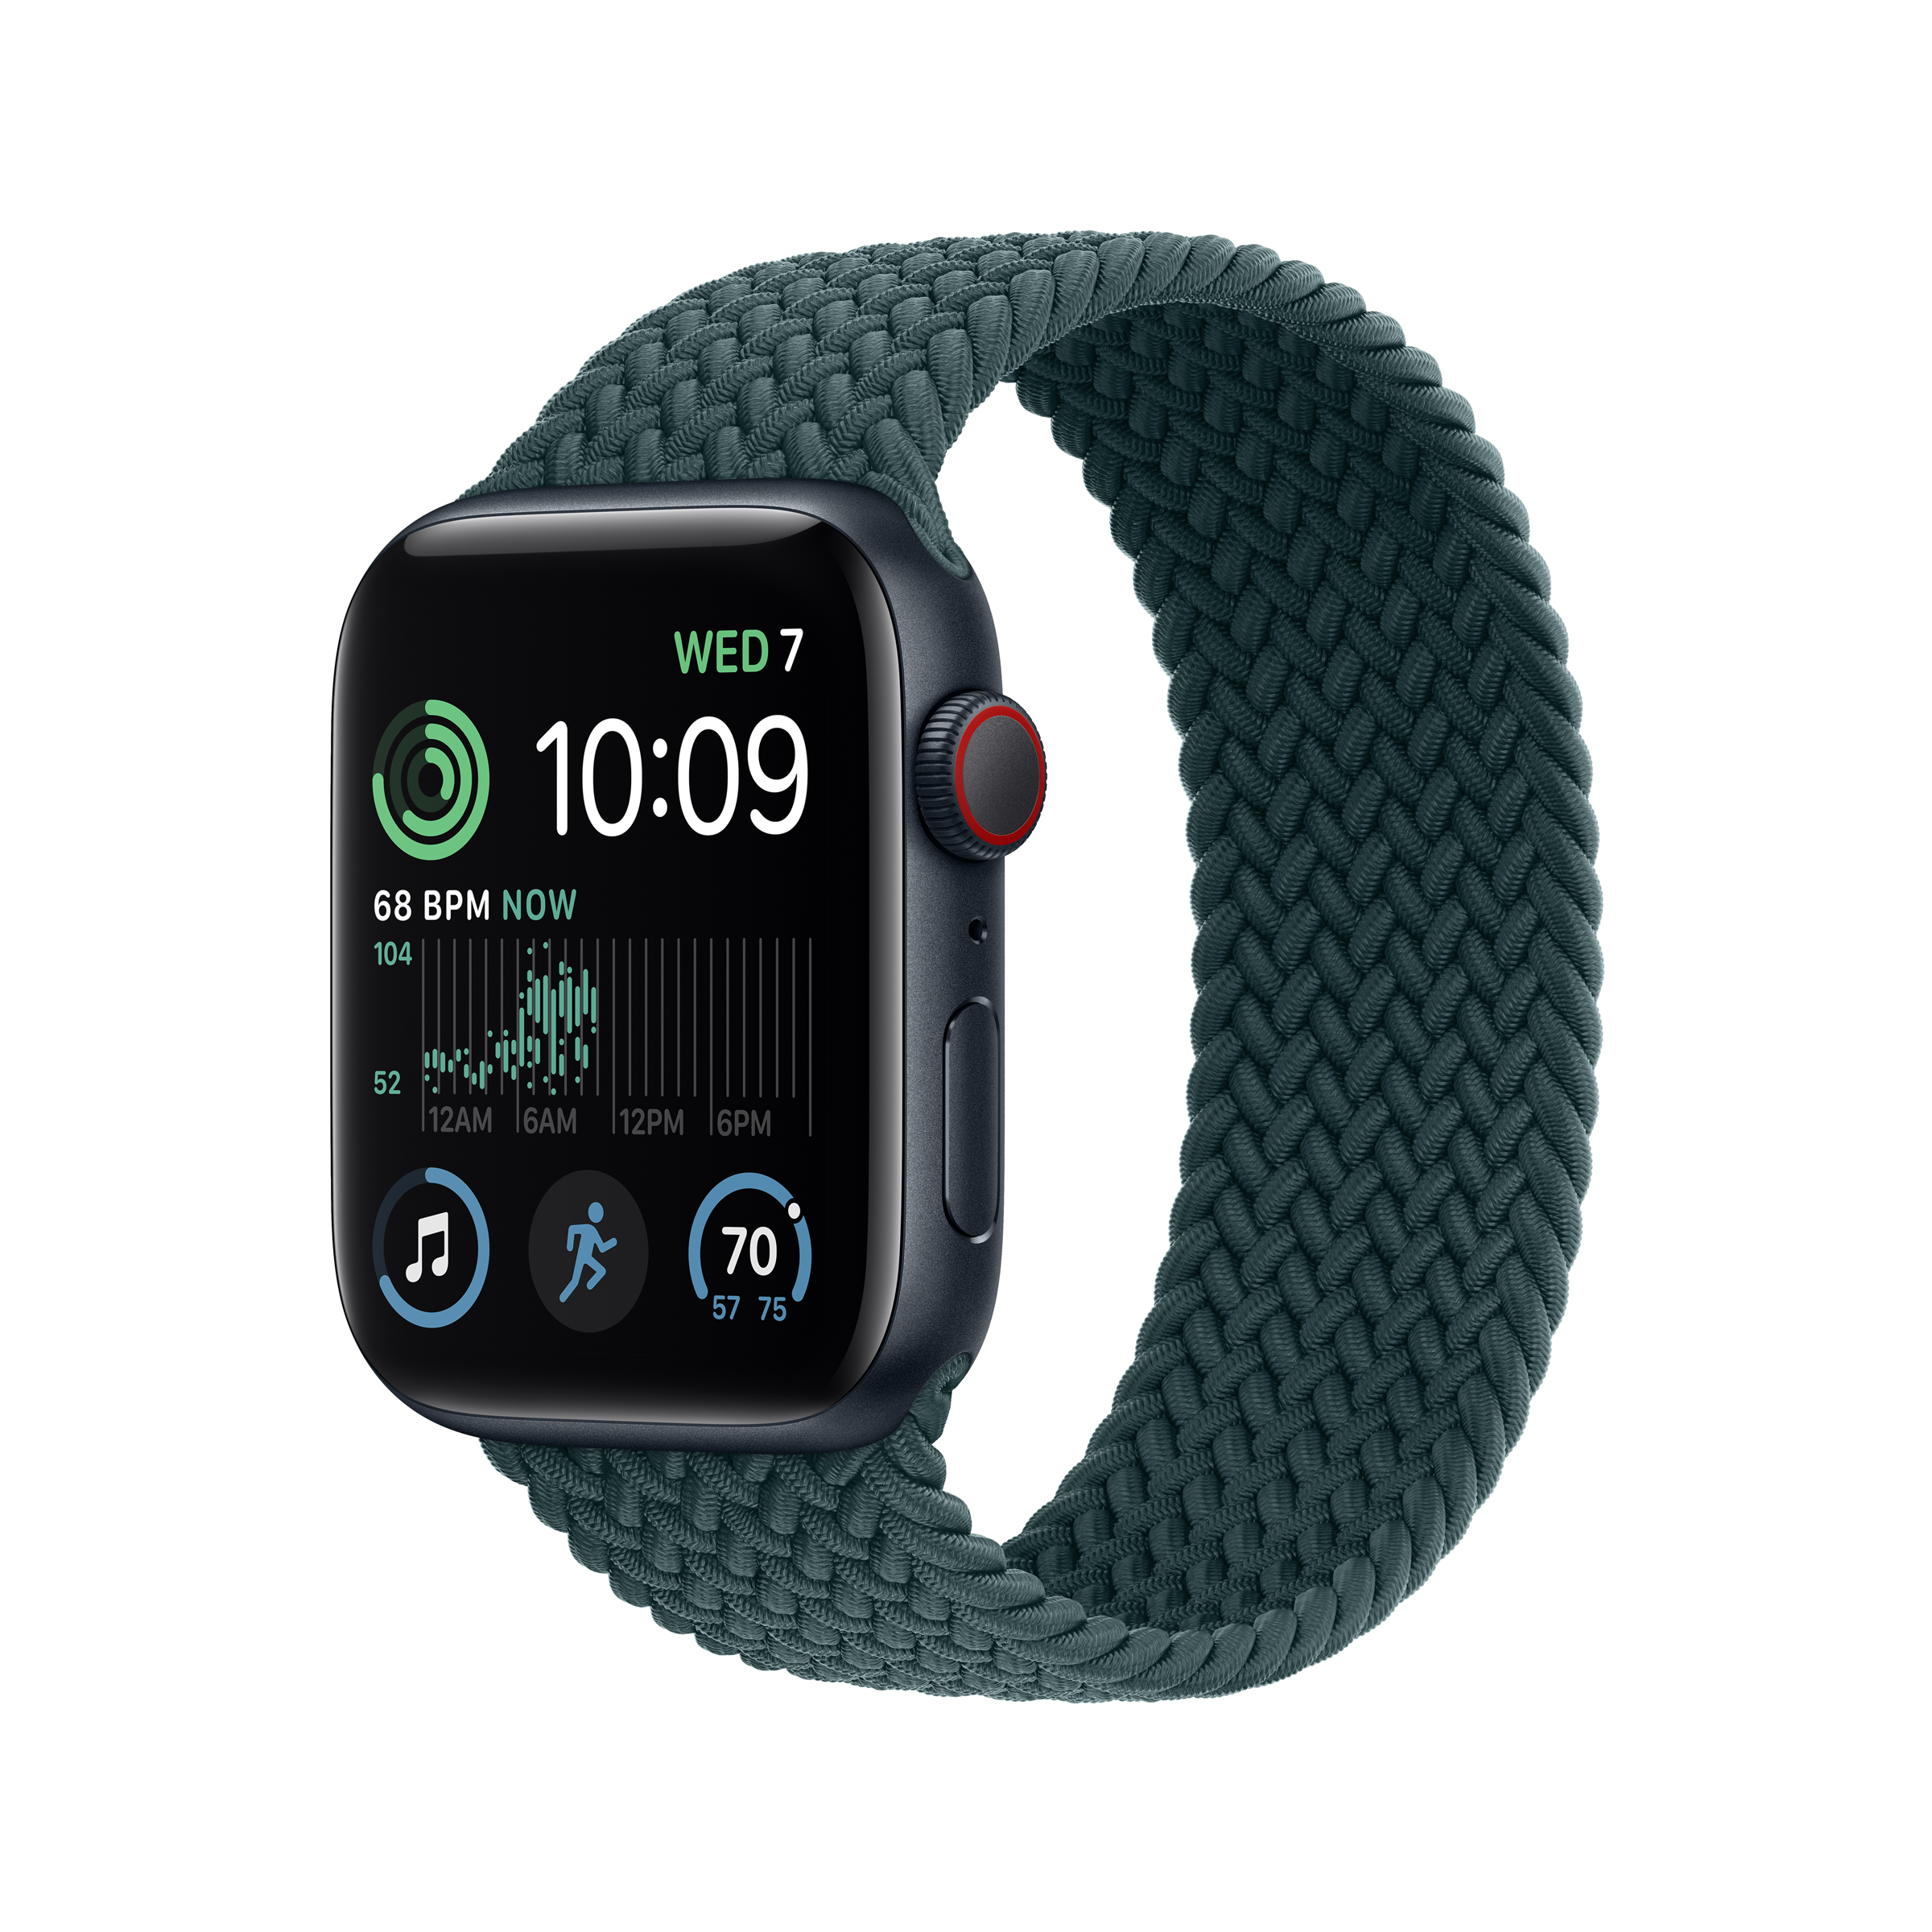 Nuevo Apple Watch SE: así es la configuración familiar